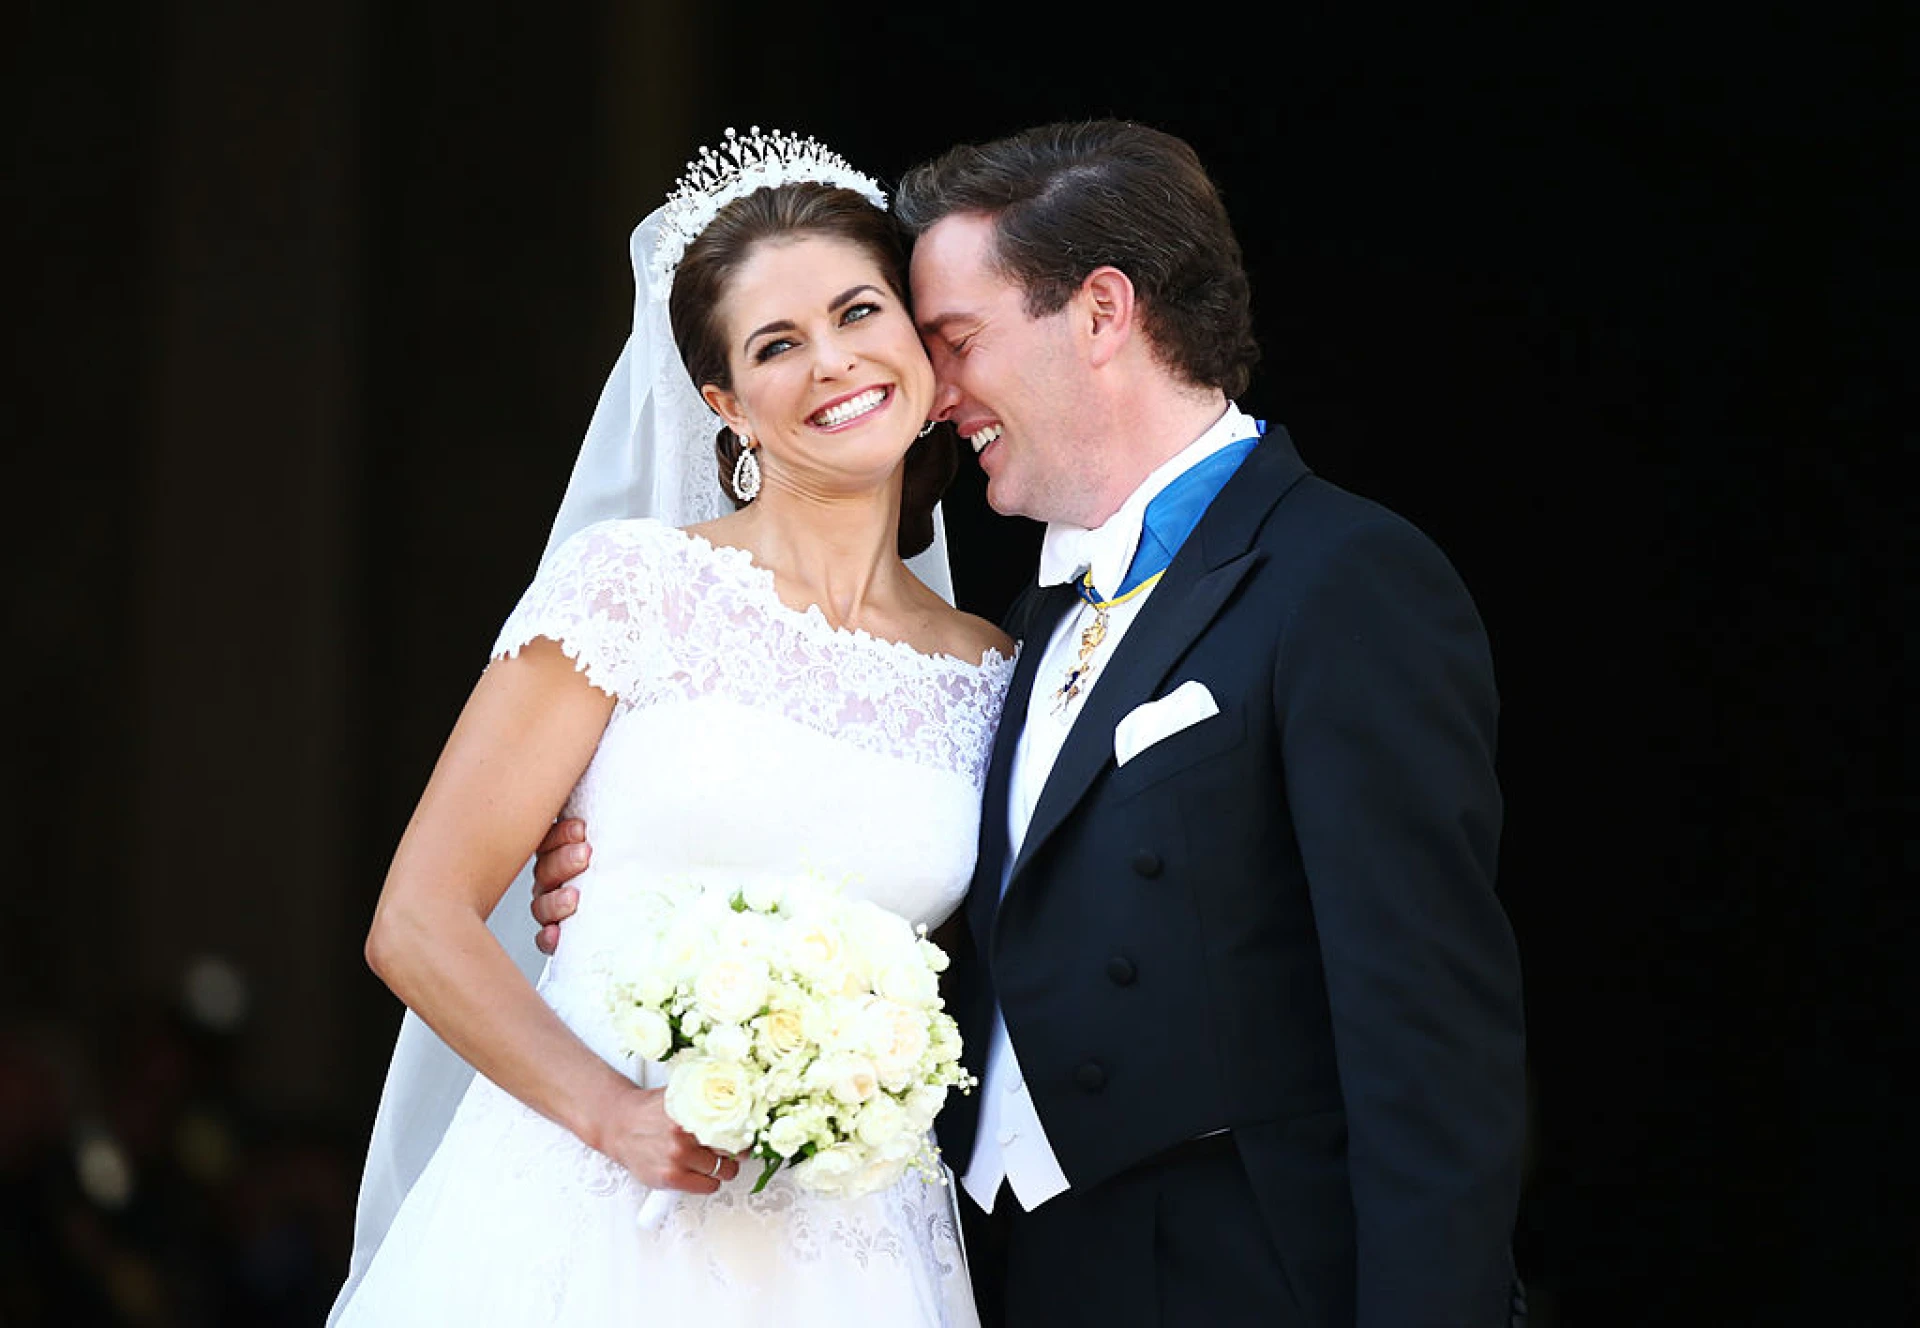 9 малко познати снимки от кралски сватби: от Кейт Мидълтън и Уилям до Даяна и принц Чарлз